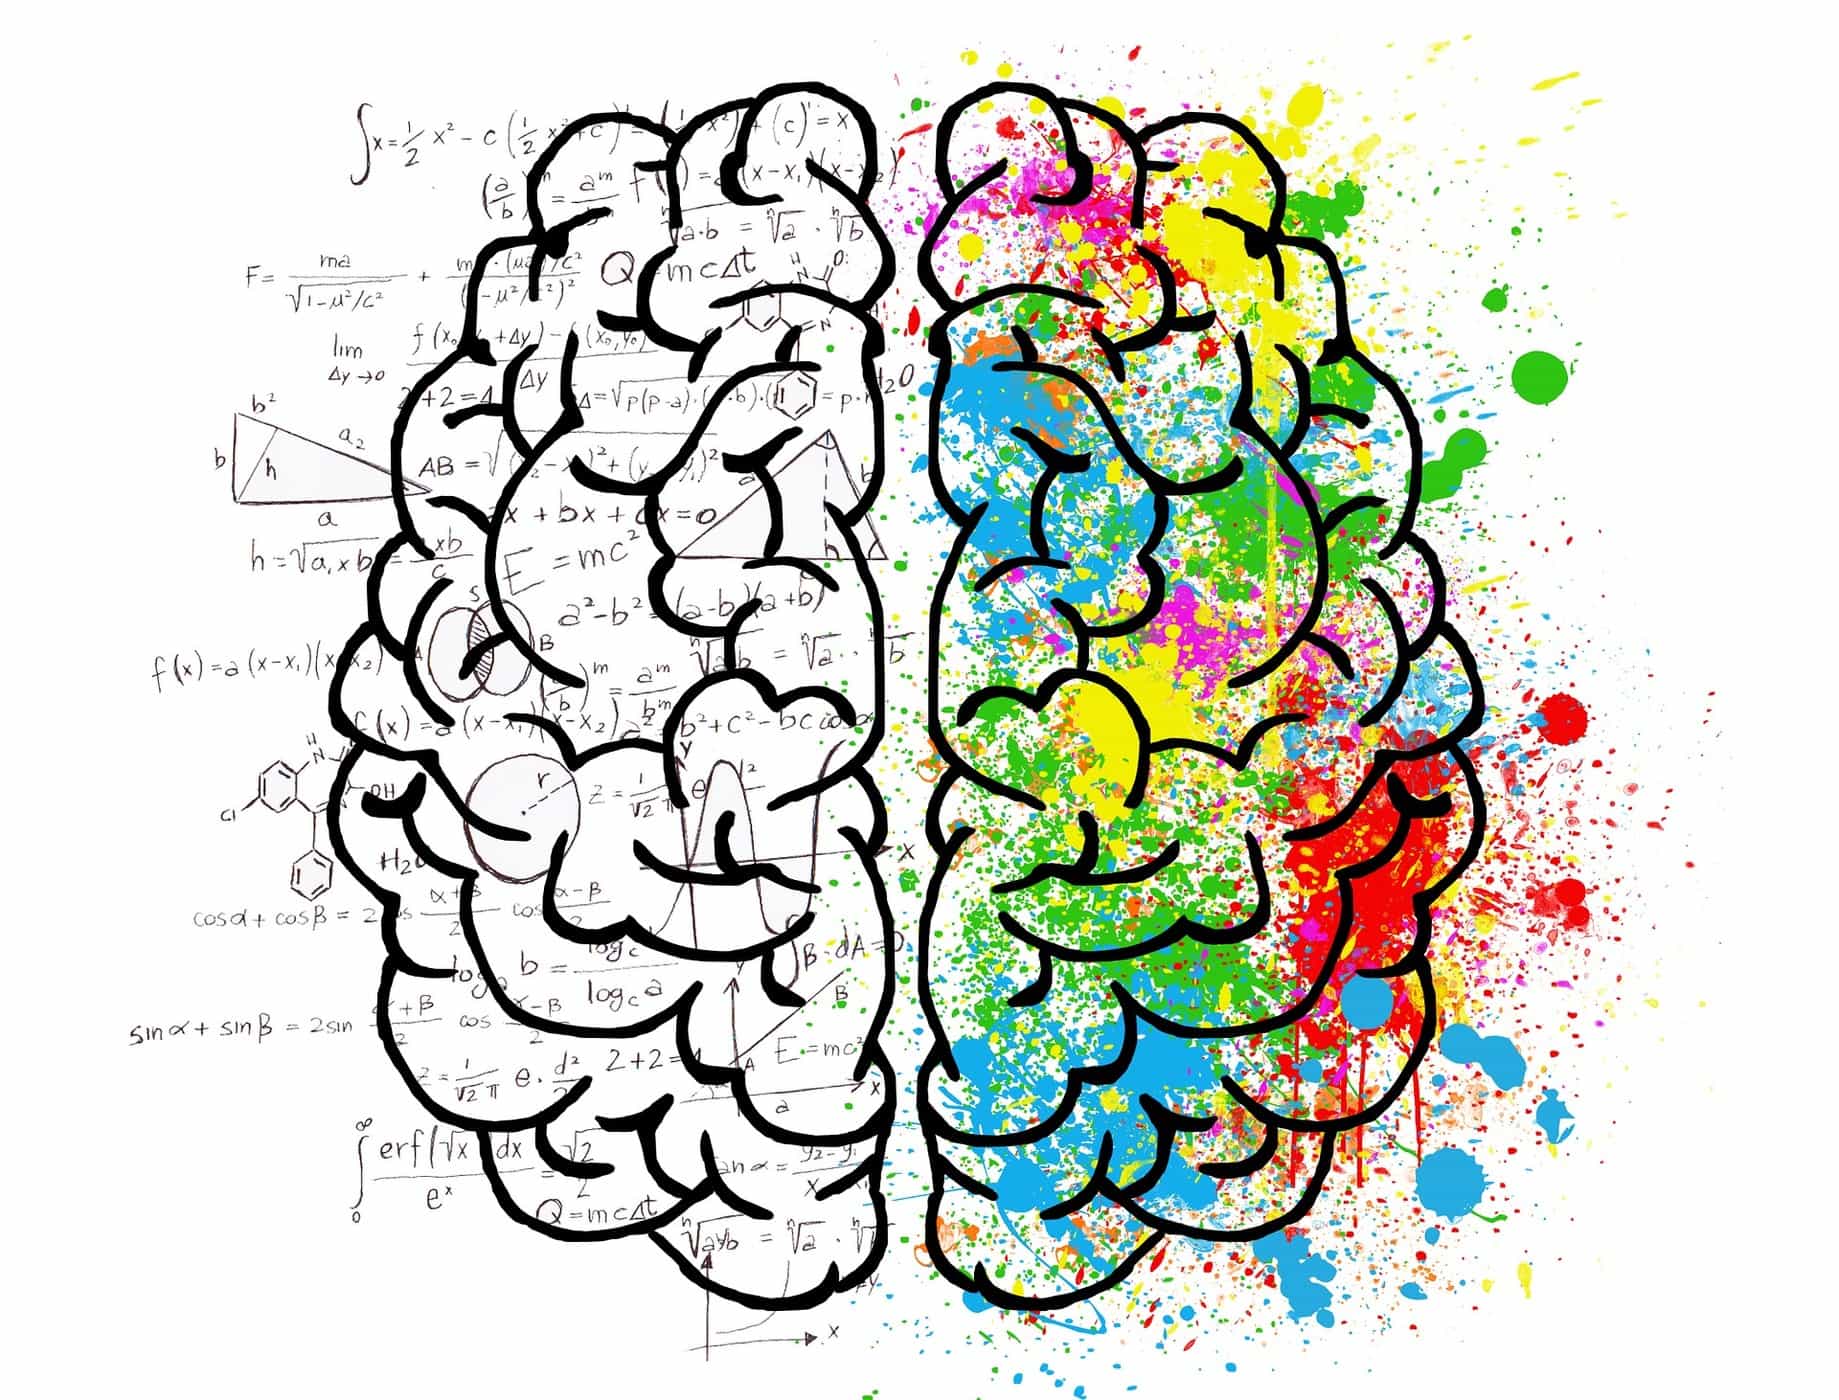 Adakah benar fungsi otak kanan dan otak kiri berbeza? Apakah Perbezaannya?